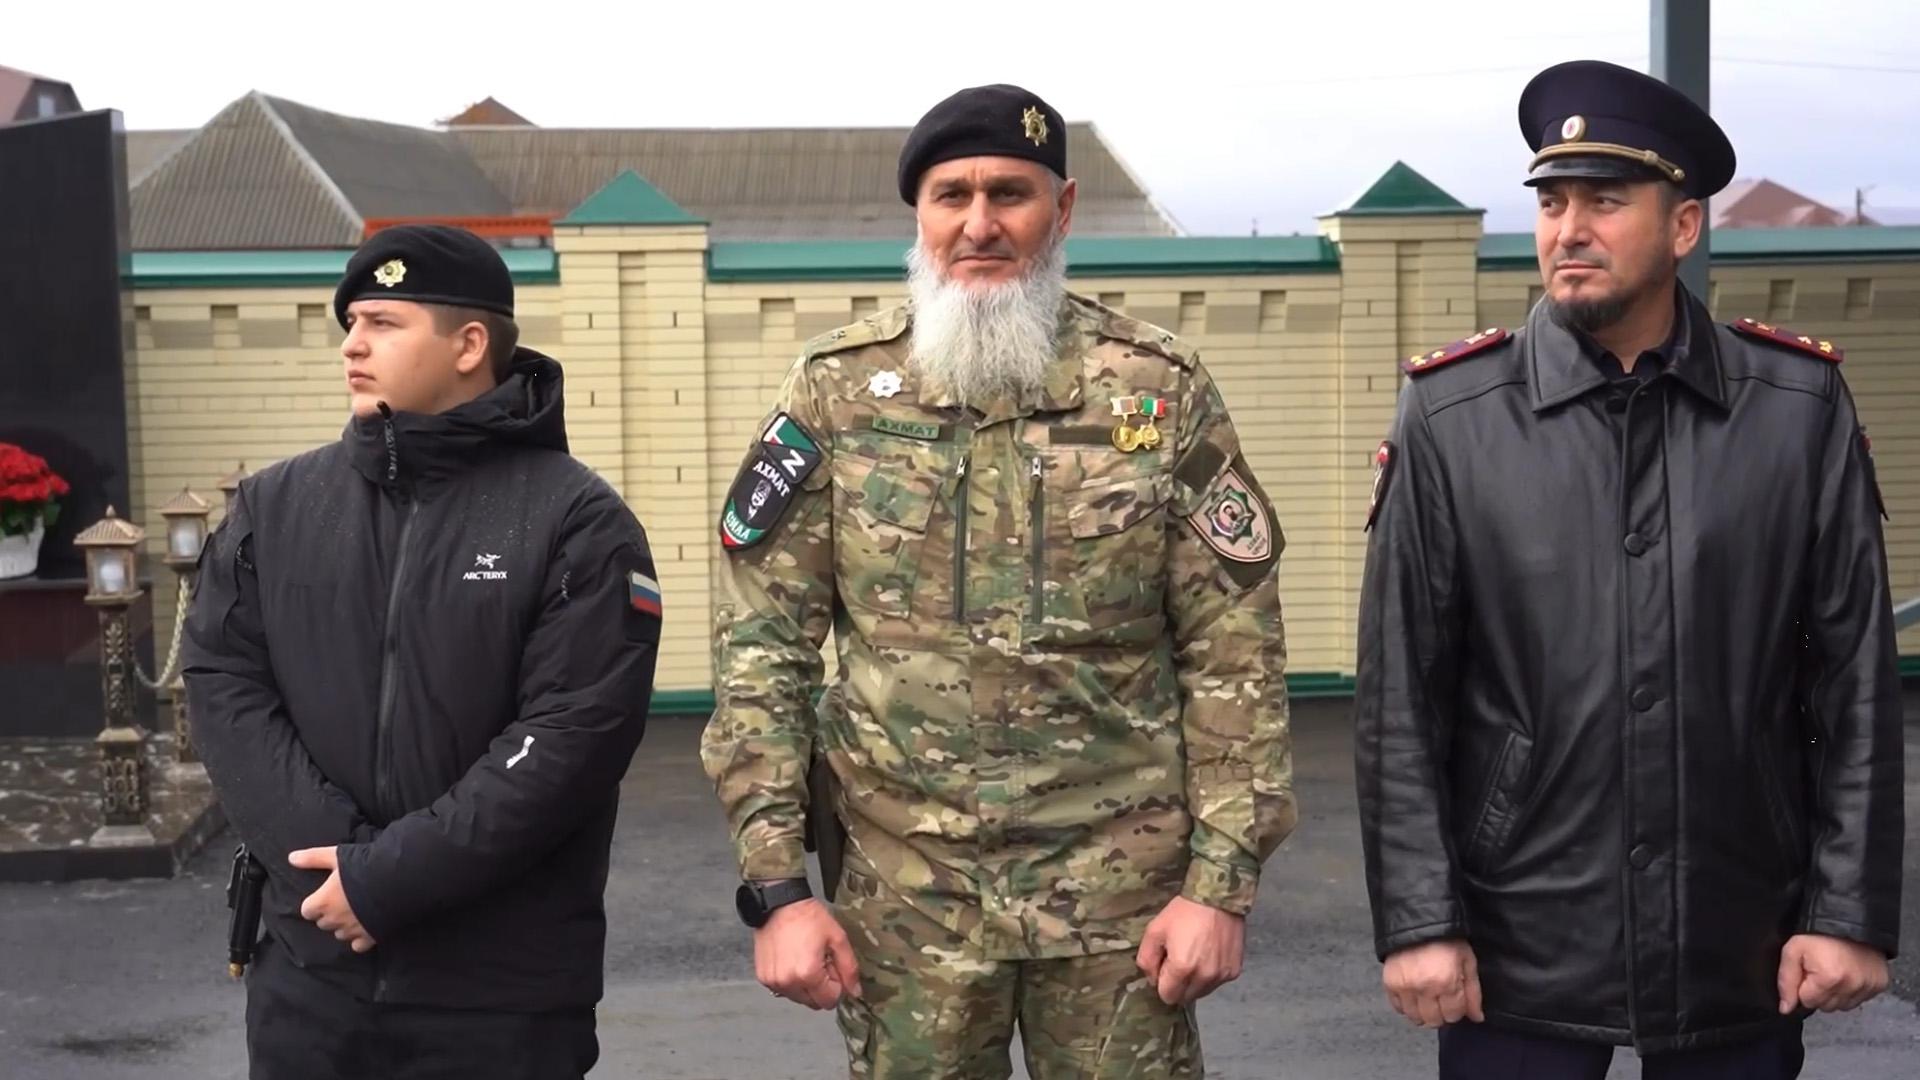 Адам Кадыров стал куратором батальона Минобороны